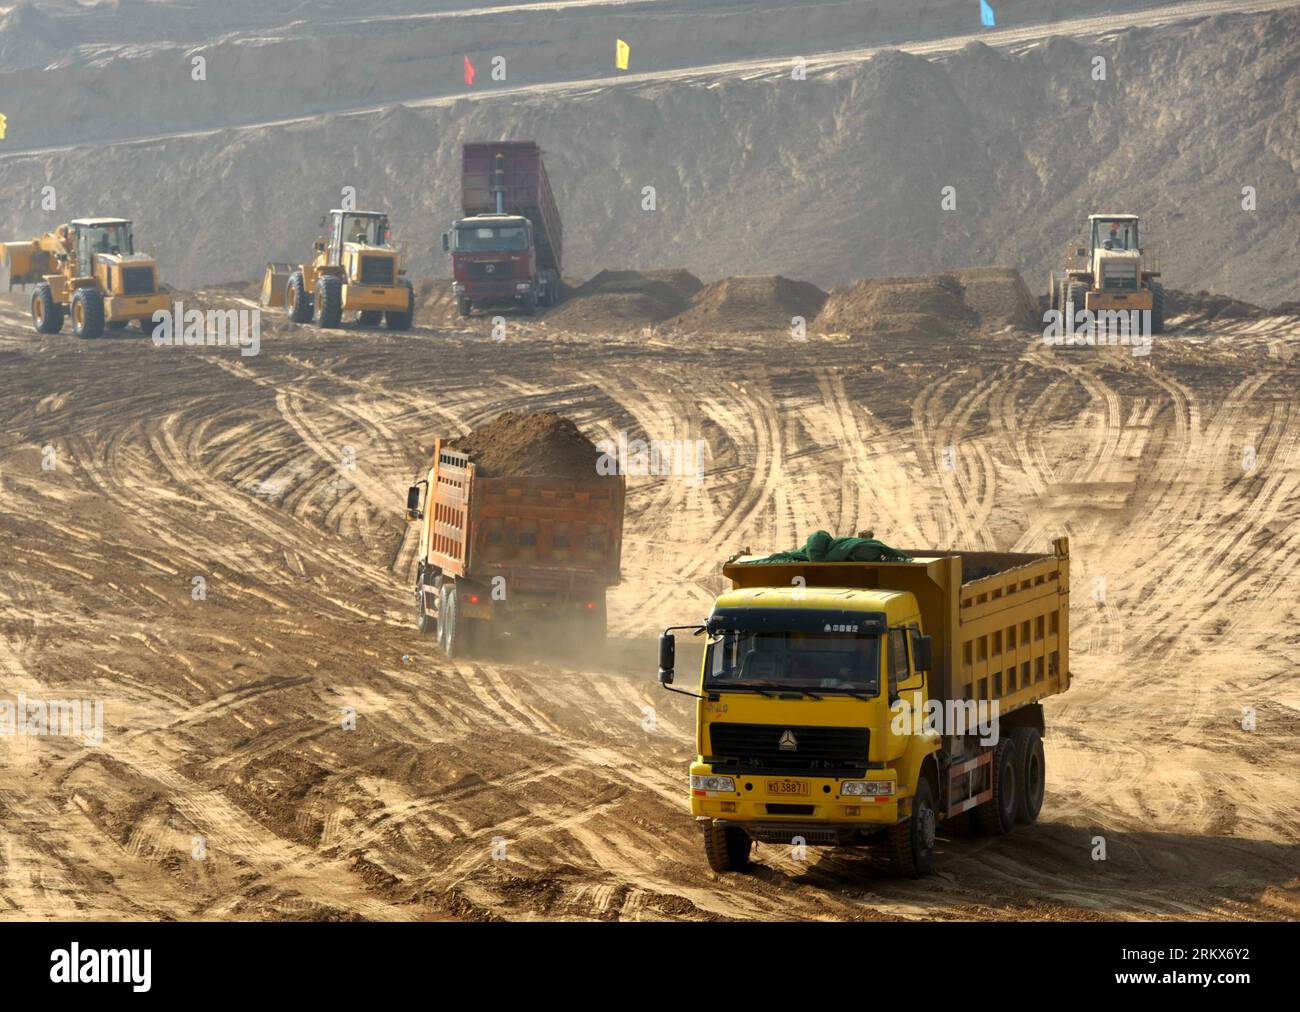 Bildnummer: 58902255 Datum: 10.12.2012 Copyright: imago/Xinhua (121210) -- LANZHOU, 10 dicembre 2012 (Xinhua) -- i veicoli da costruzione lavorano in una regione collinare a Lanzhou, capitale della provincia del Gansu della Cina nord-occidentale, 10 dicembre 2012. Da ottobre è in corso la costruzione di un progetto di sviluppo del terreno, in quanto la città ha pianificato di rimuovere alcune delle sue aride colline per fornire terreno di 25 chilometri quadrati in mezzo anno per lo sviluppo della città. (Xinhua/Nie Jianjiang) CHINA-GANSU-LANZHOU-CITY CONSTRUCTION (CN) PUBLICATIONxNOTxINxCHN Wirtschaft Baugewerbe Baustelle Bauarbeiten Bodenarbeiten xjh x0x 20 Foto Stock